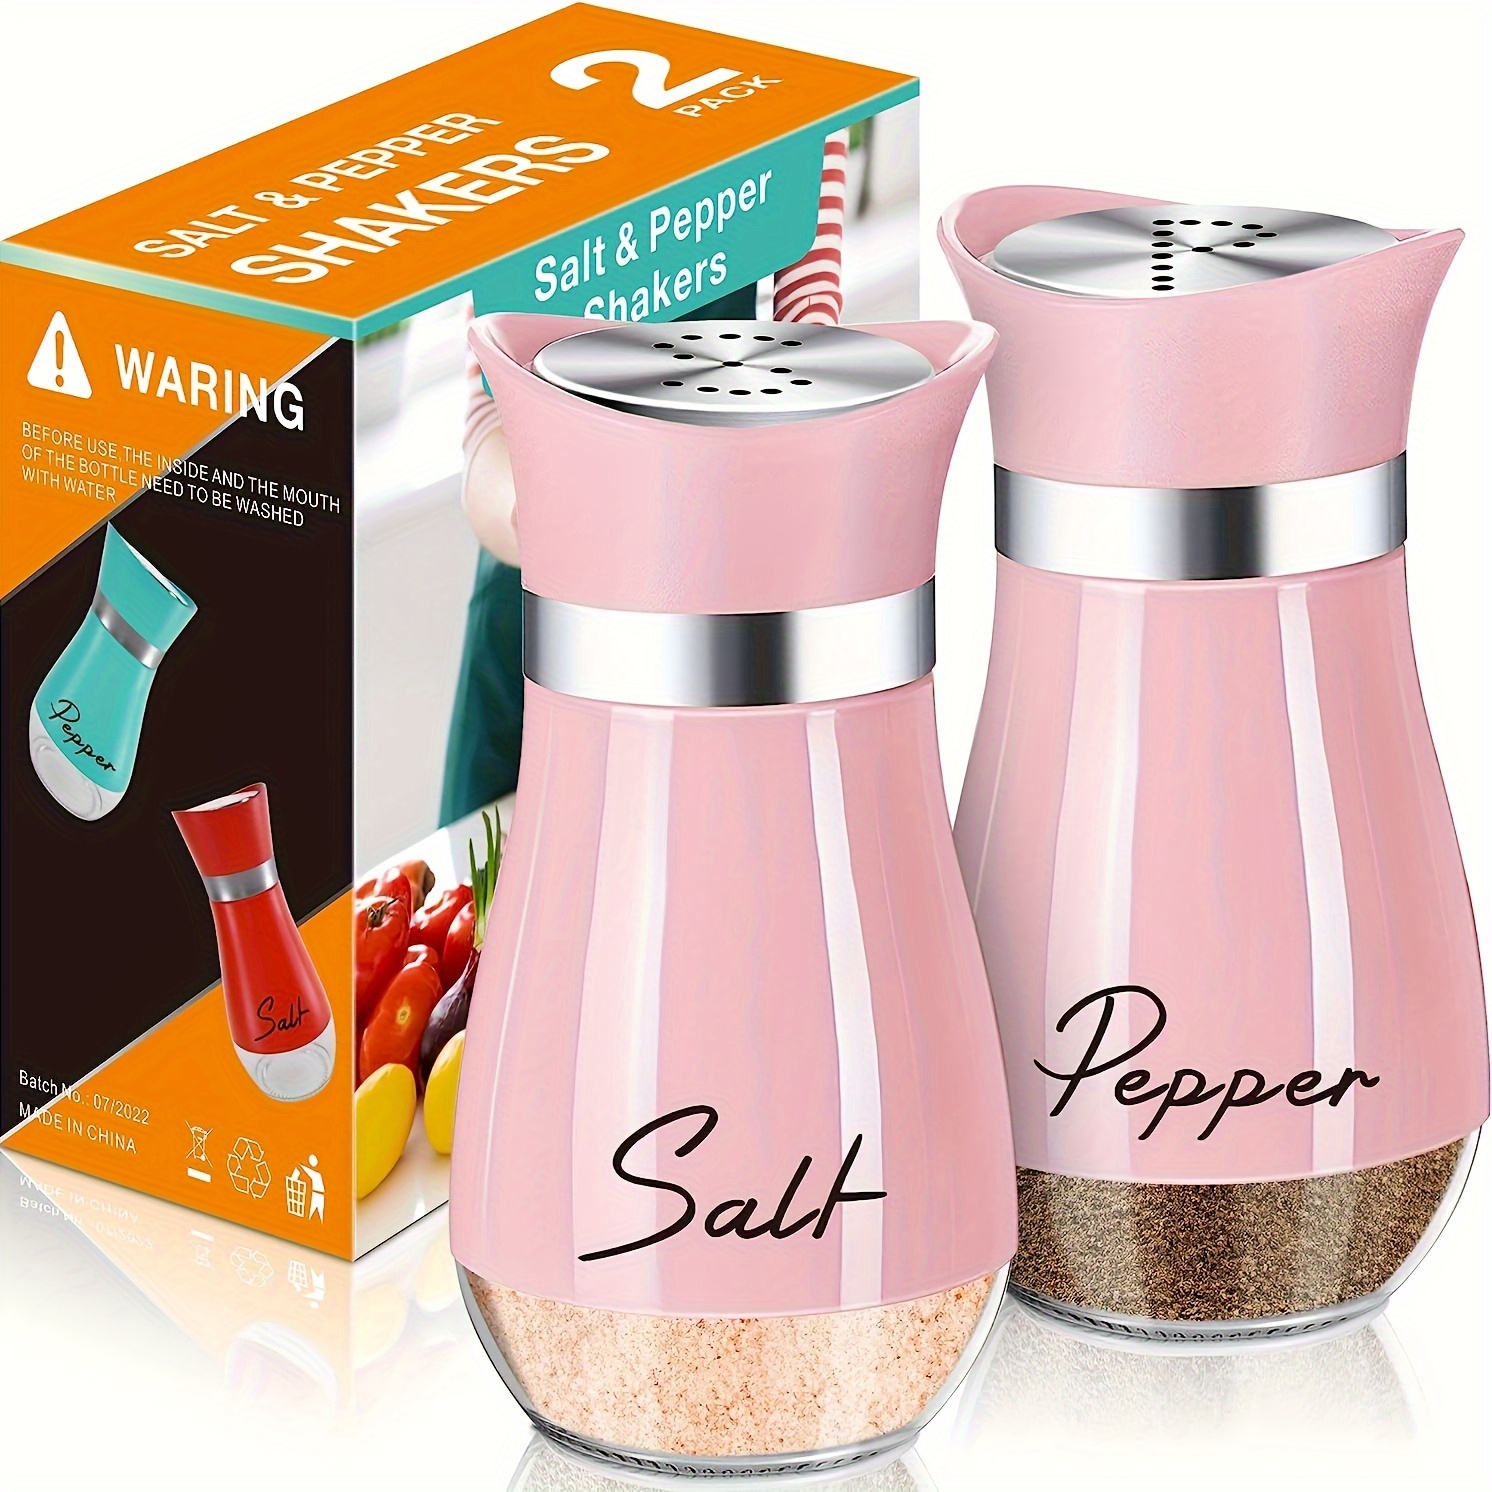 2pcs New 3 Holes Magic Wand Salt and Pepper Shakers, Modern Cute Salt and Pepper Shakers Set,Plastic Large Salt and Pepper Shakers Cute,Salt Shakers